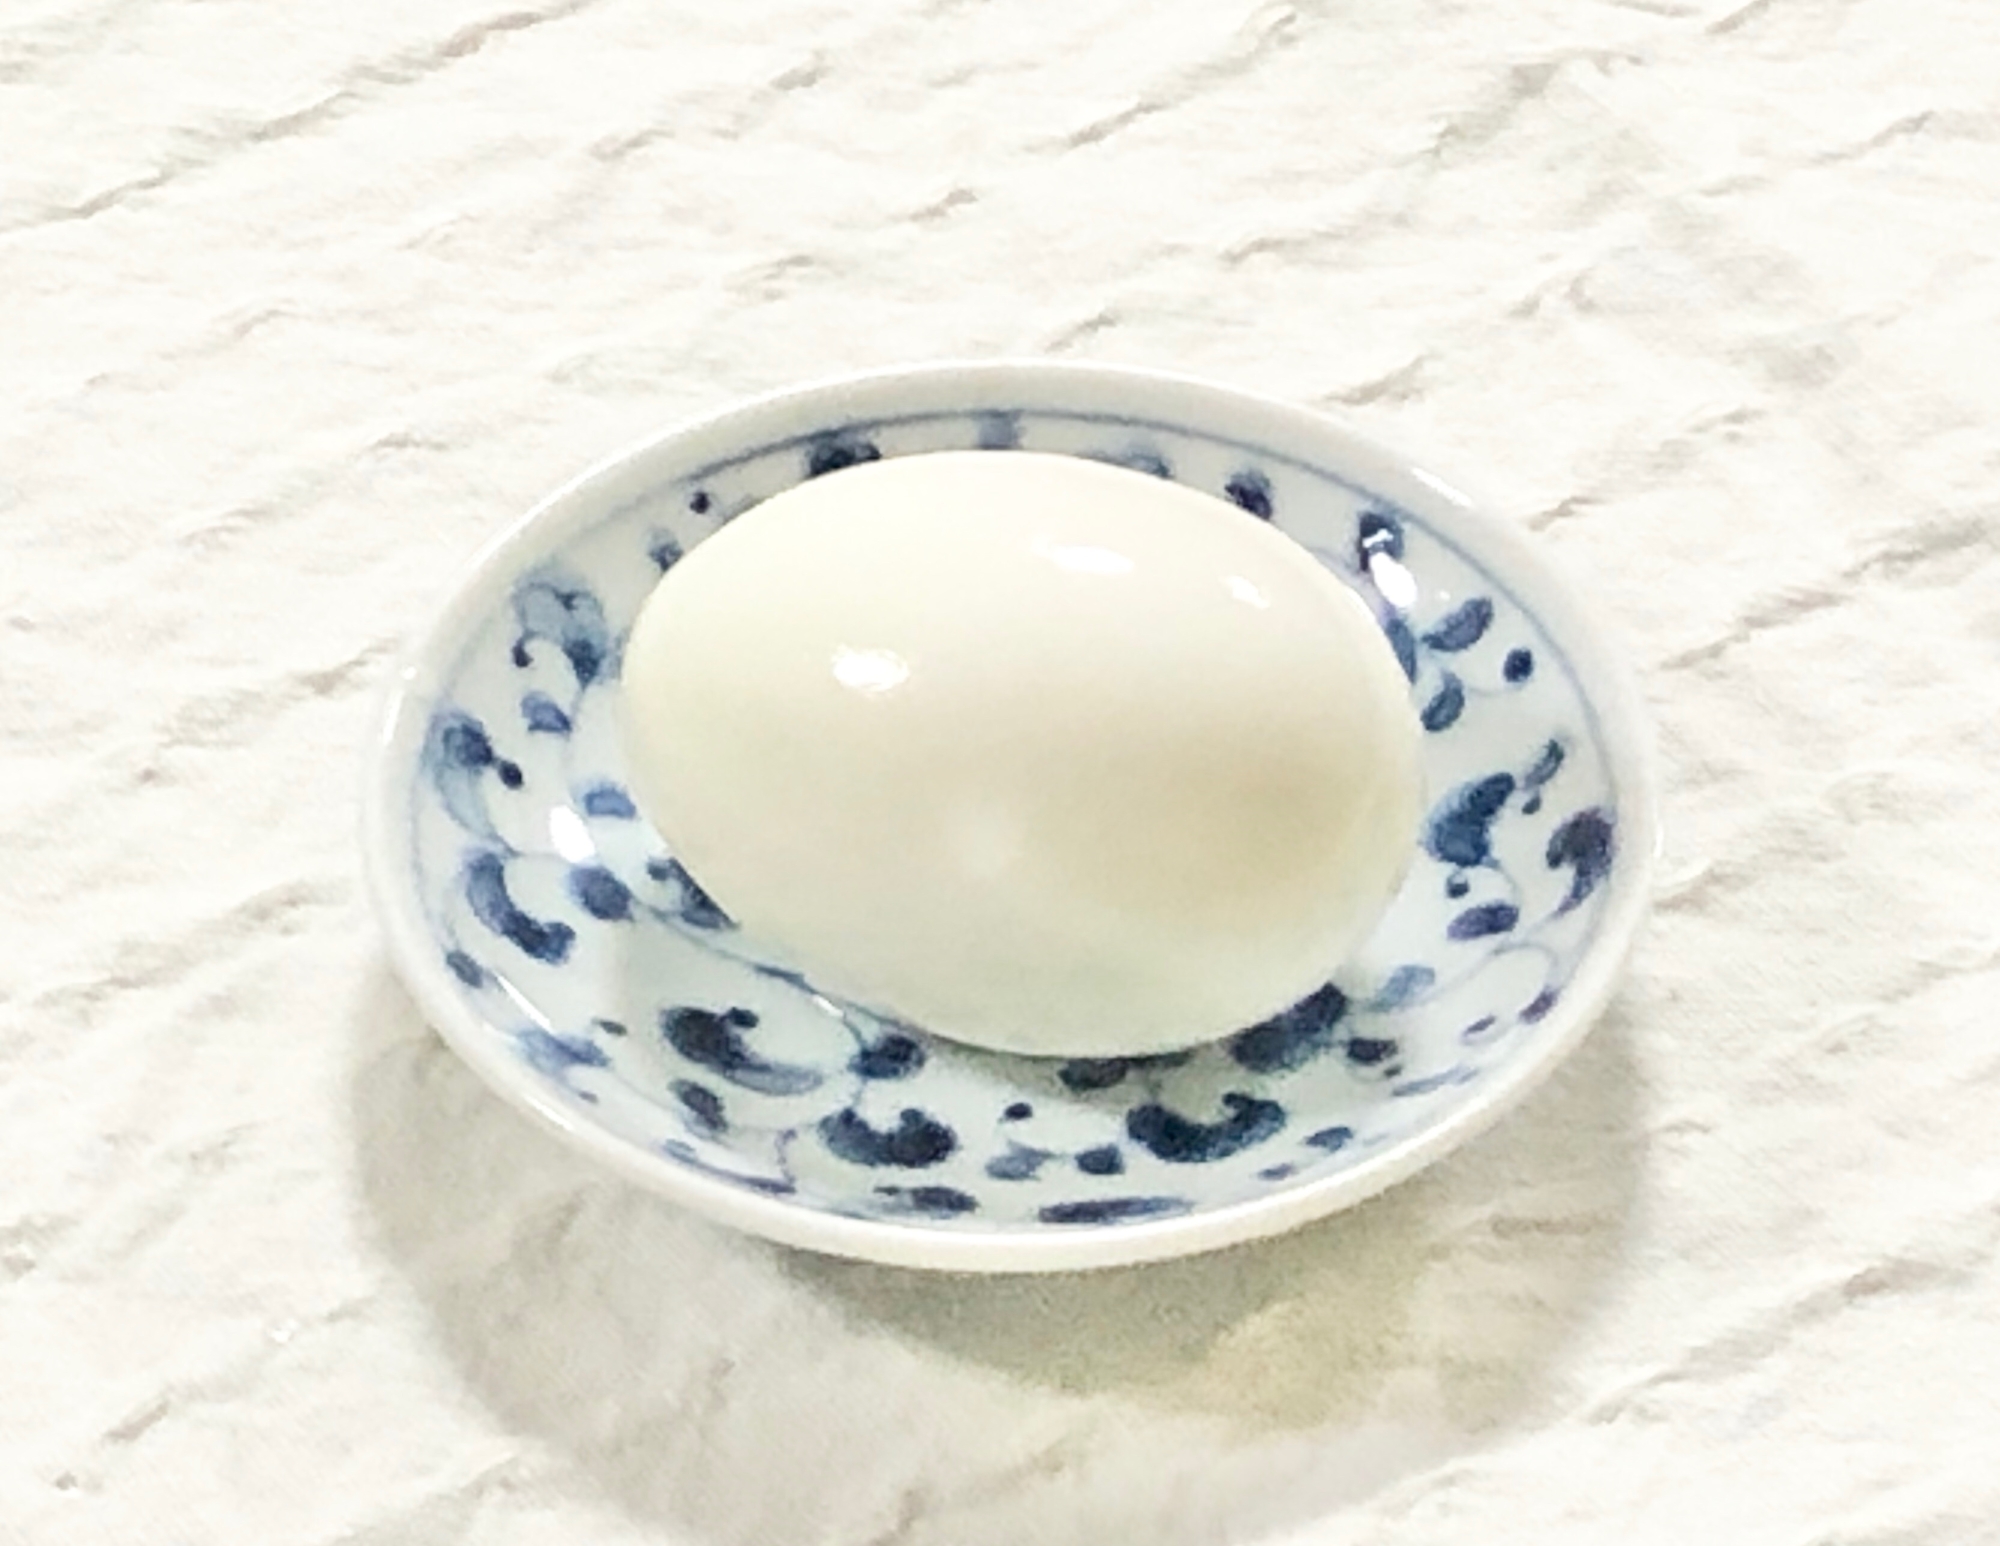 簡単⭐茹で卵の作り方